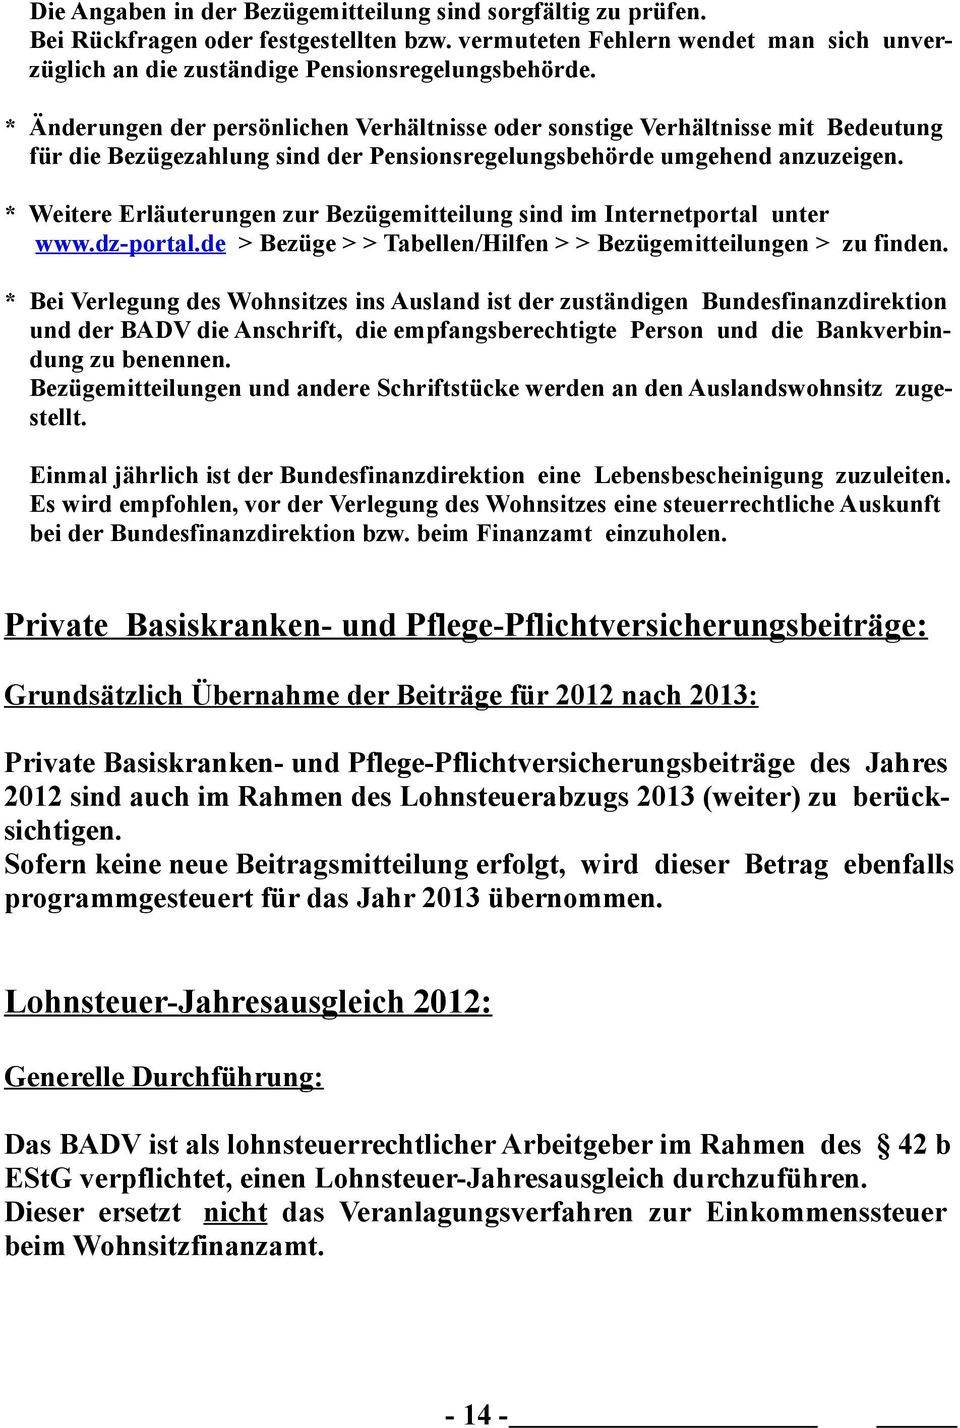 * Weitere Erläuterungen zur Bezügemitteilung sind im Internetportal unter www.dz-portal.de > Bezüge > > Tabellen/Hilfen > > Bezügemitteilungen > zu finden.